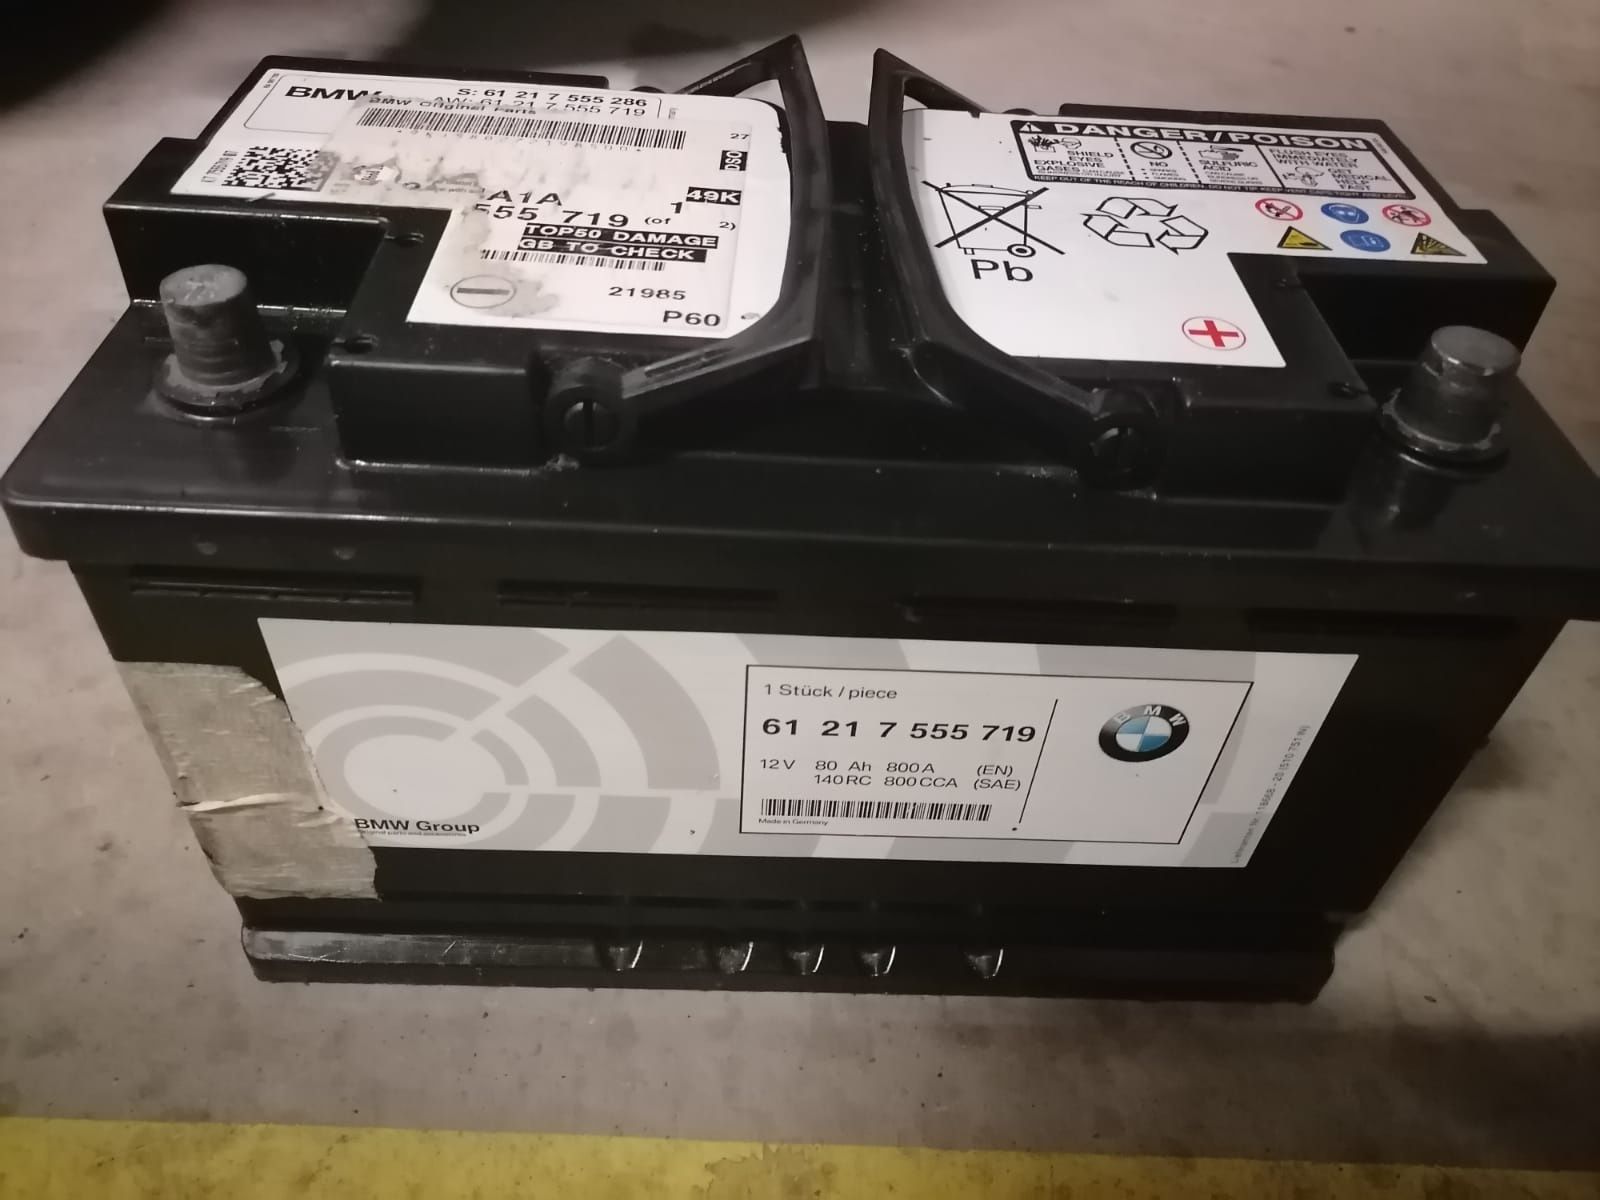 Baterie auto BMW 80 amperi cu 800 la pornire Agm cu Start stop origina